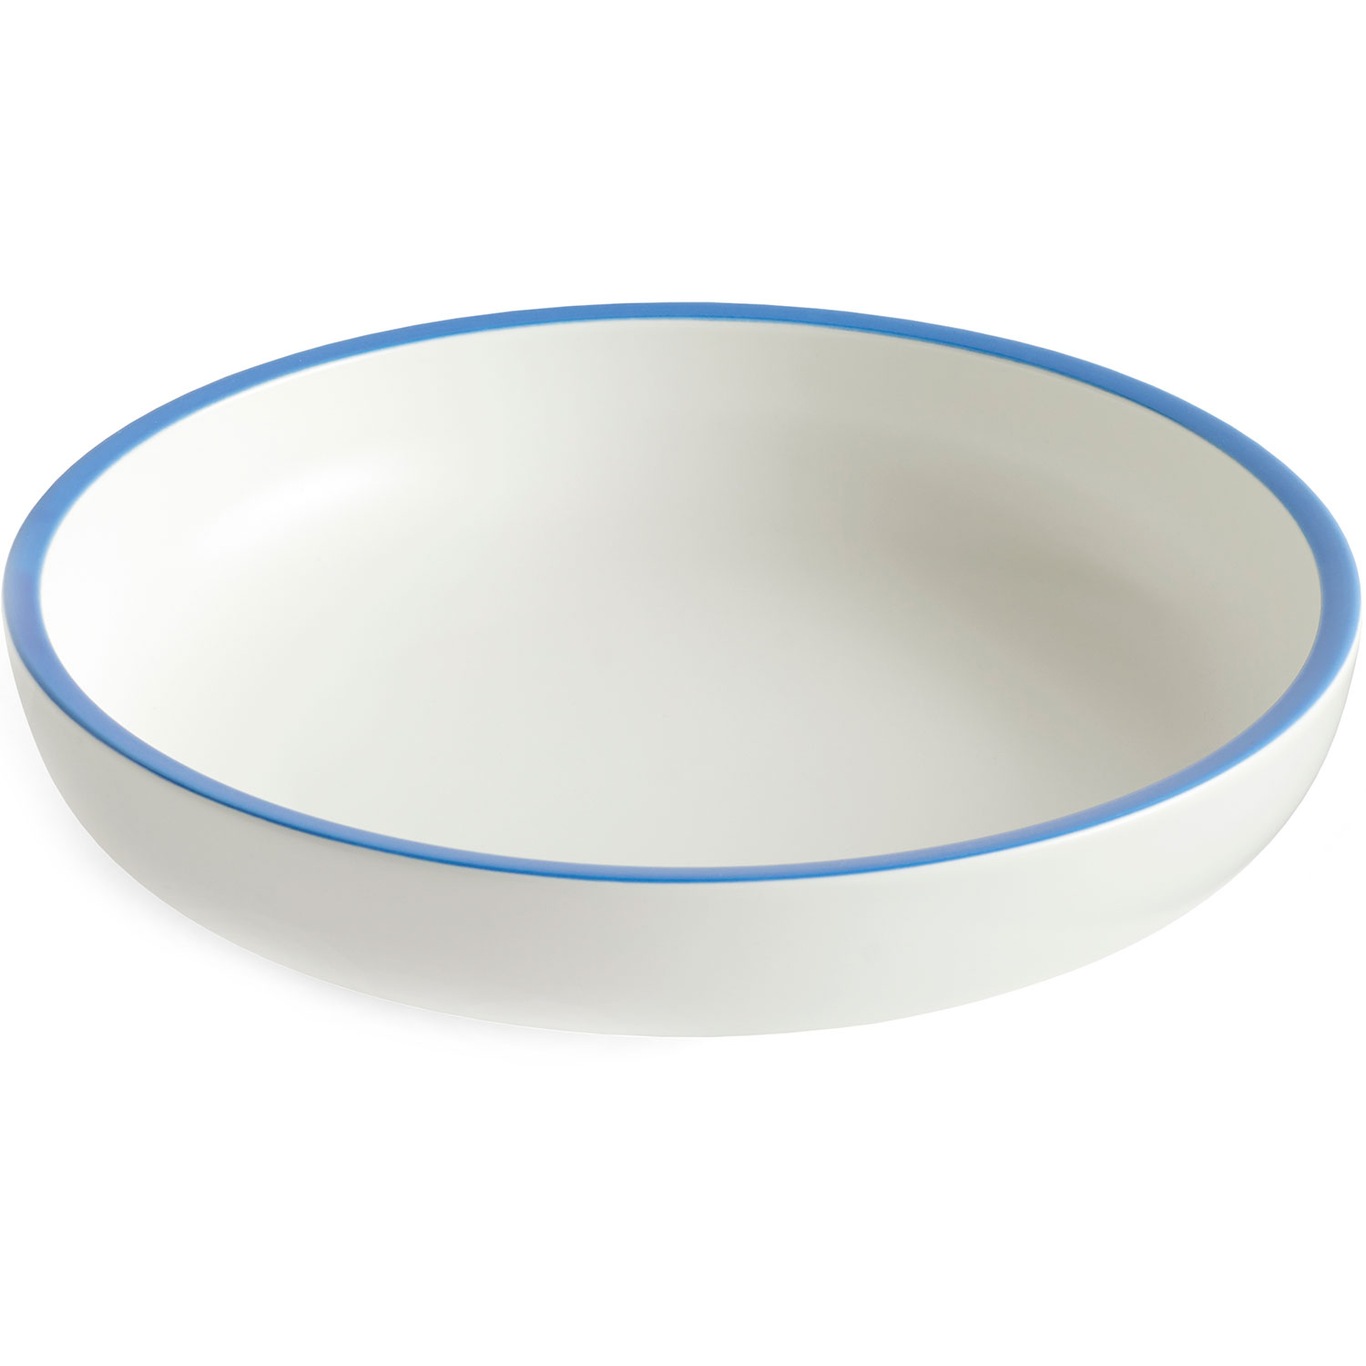 Sobremesa Bowl 25 cm, White/Blue